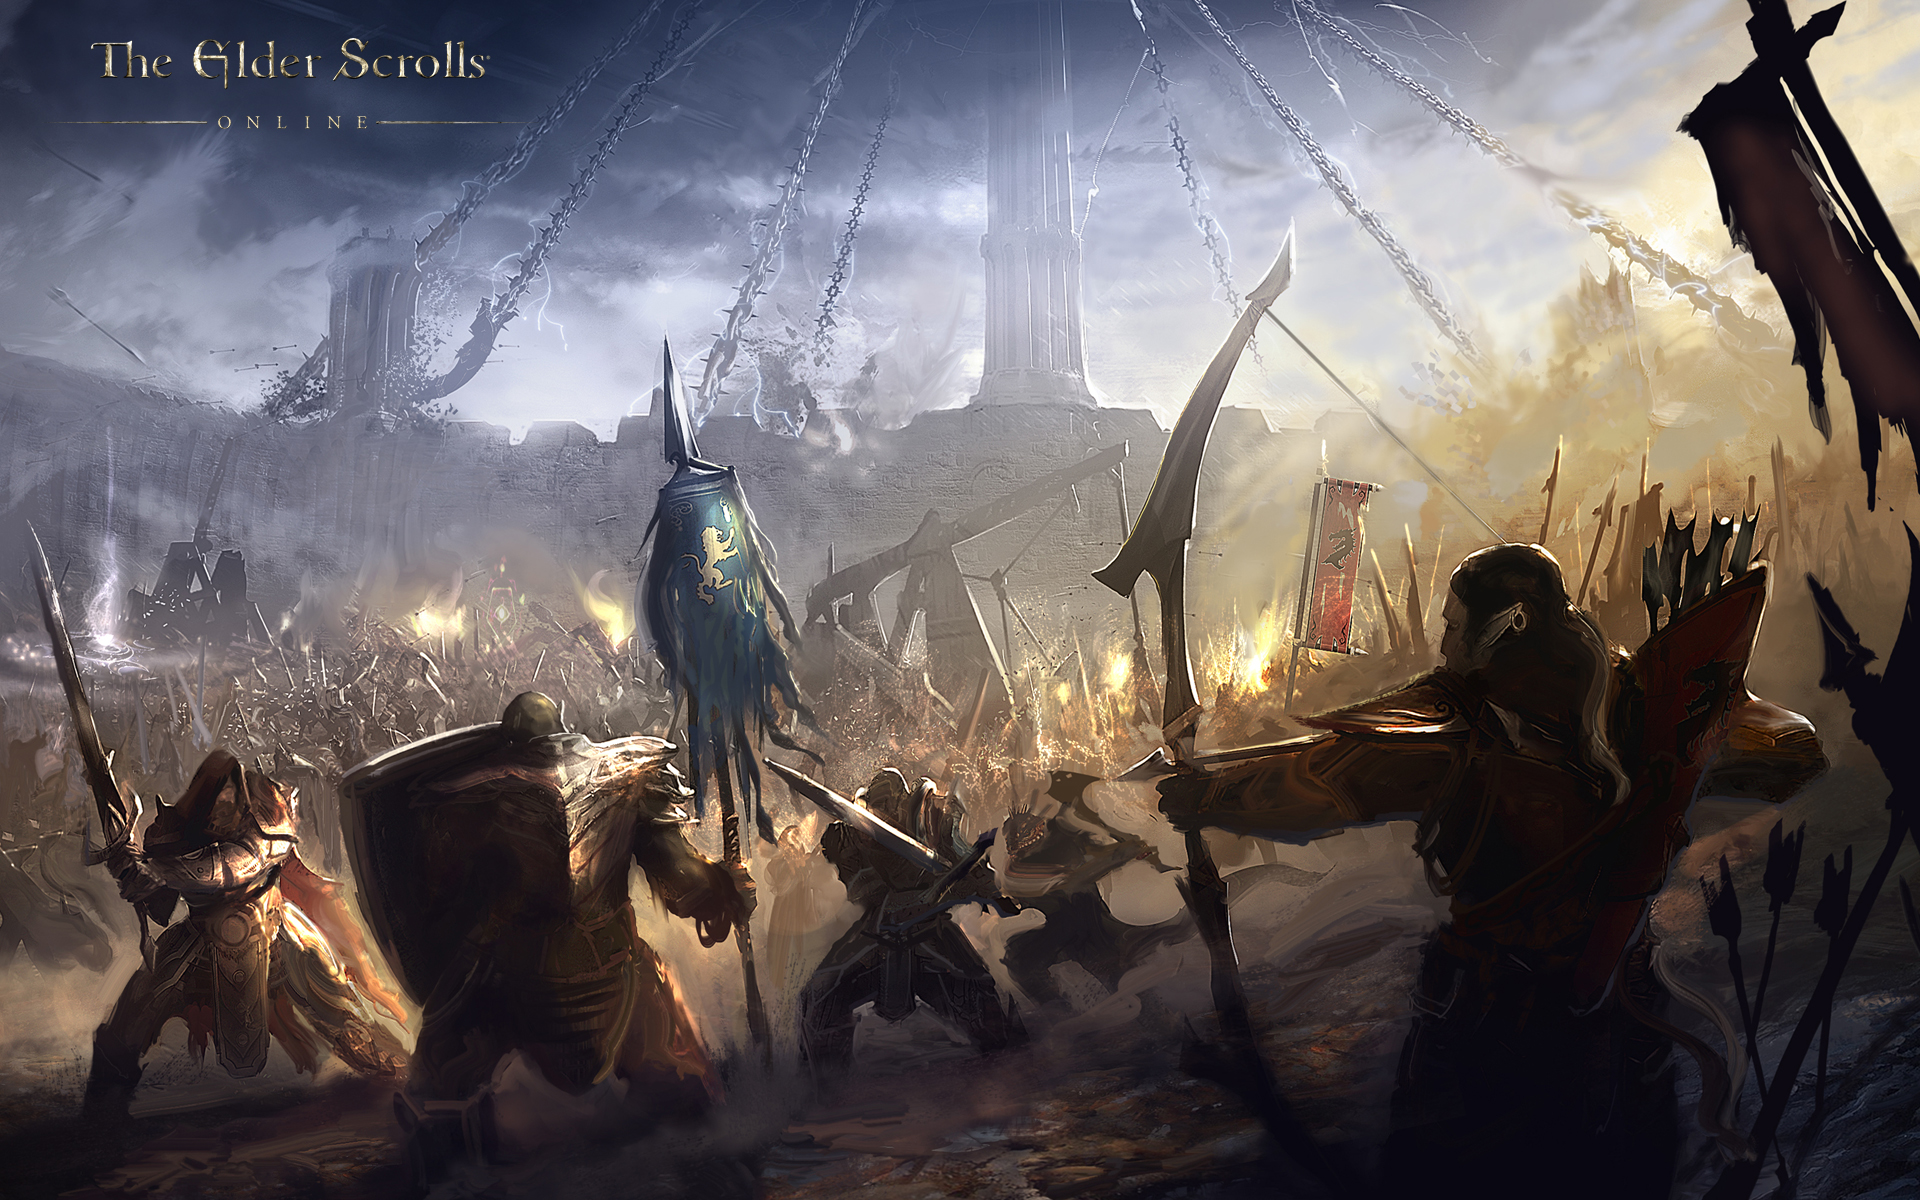 Wallpaper The Elder Scrolls Online: Alliance battle